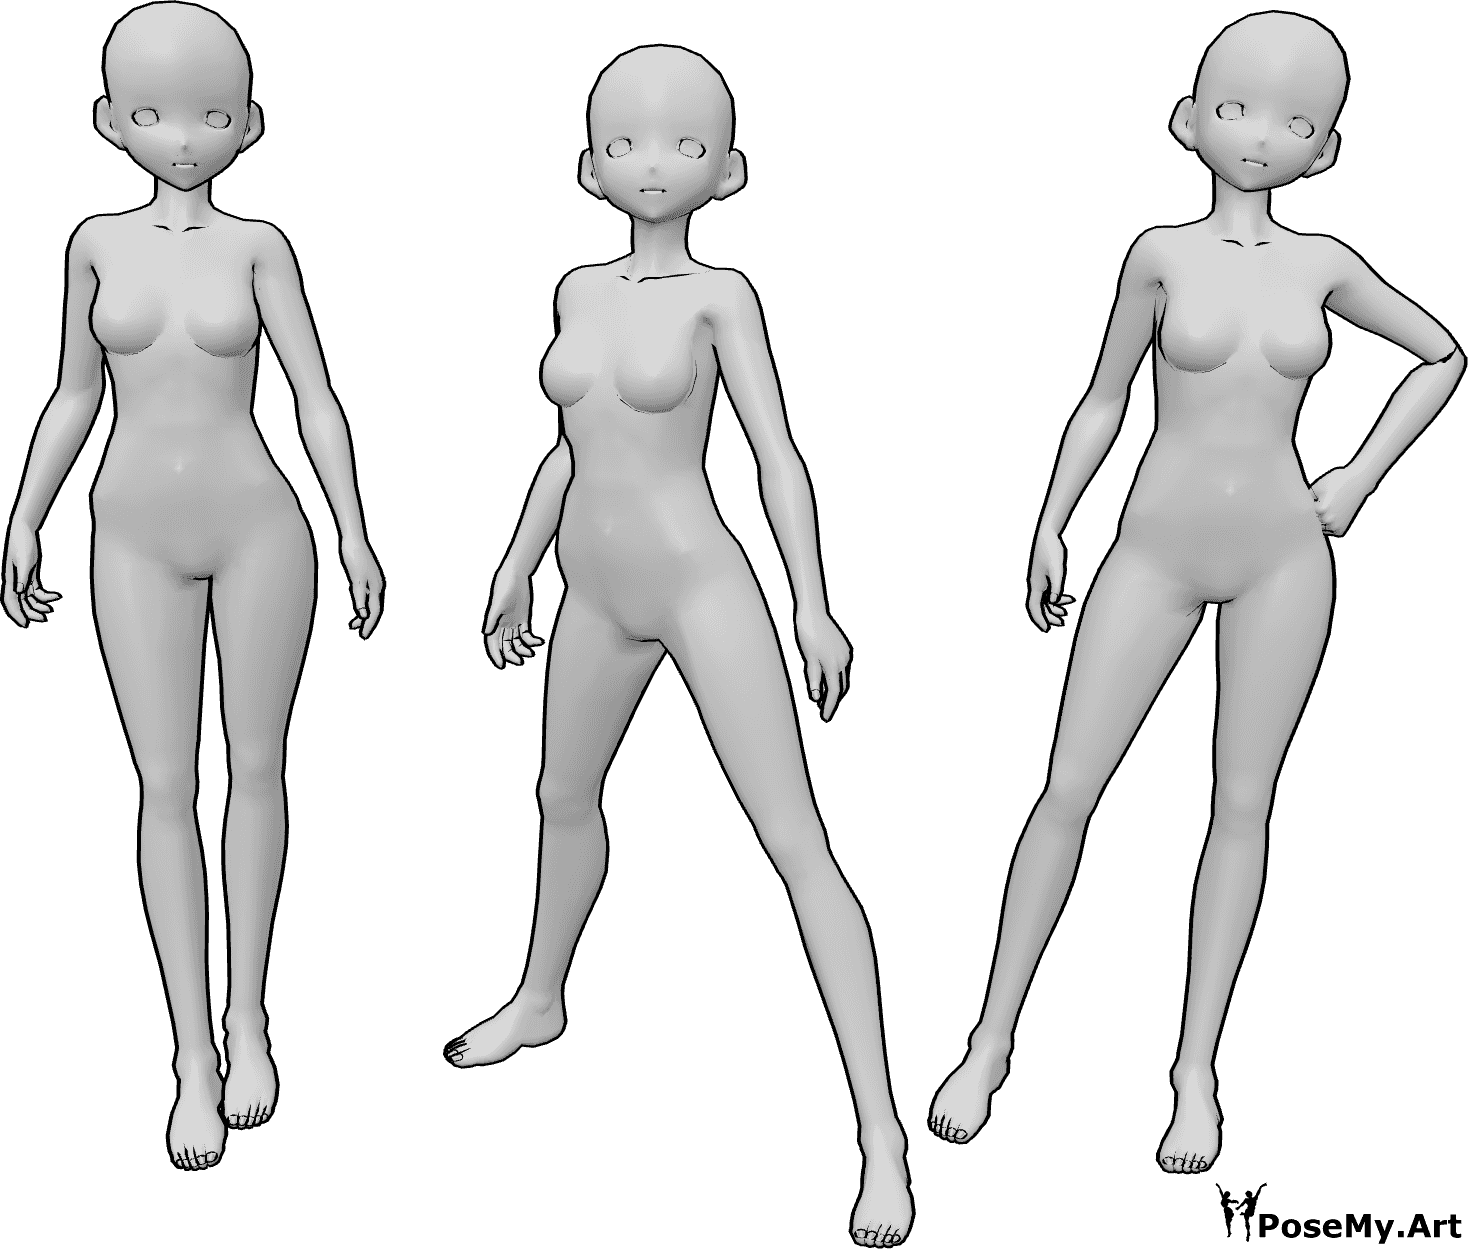 Riferimento alle pose- Tre femmine anime in posa - Tre donne anime sono in piedi e posano con sicurezza, come modelle.